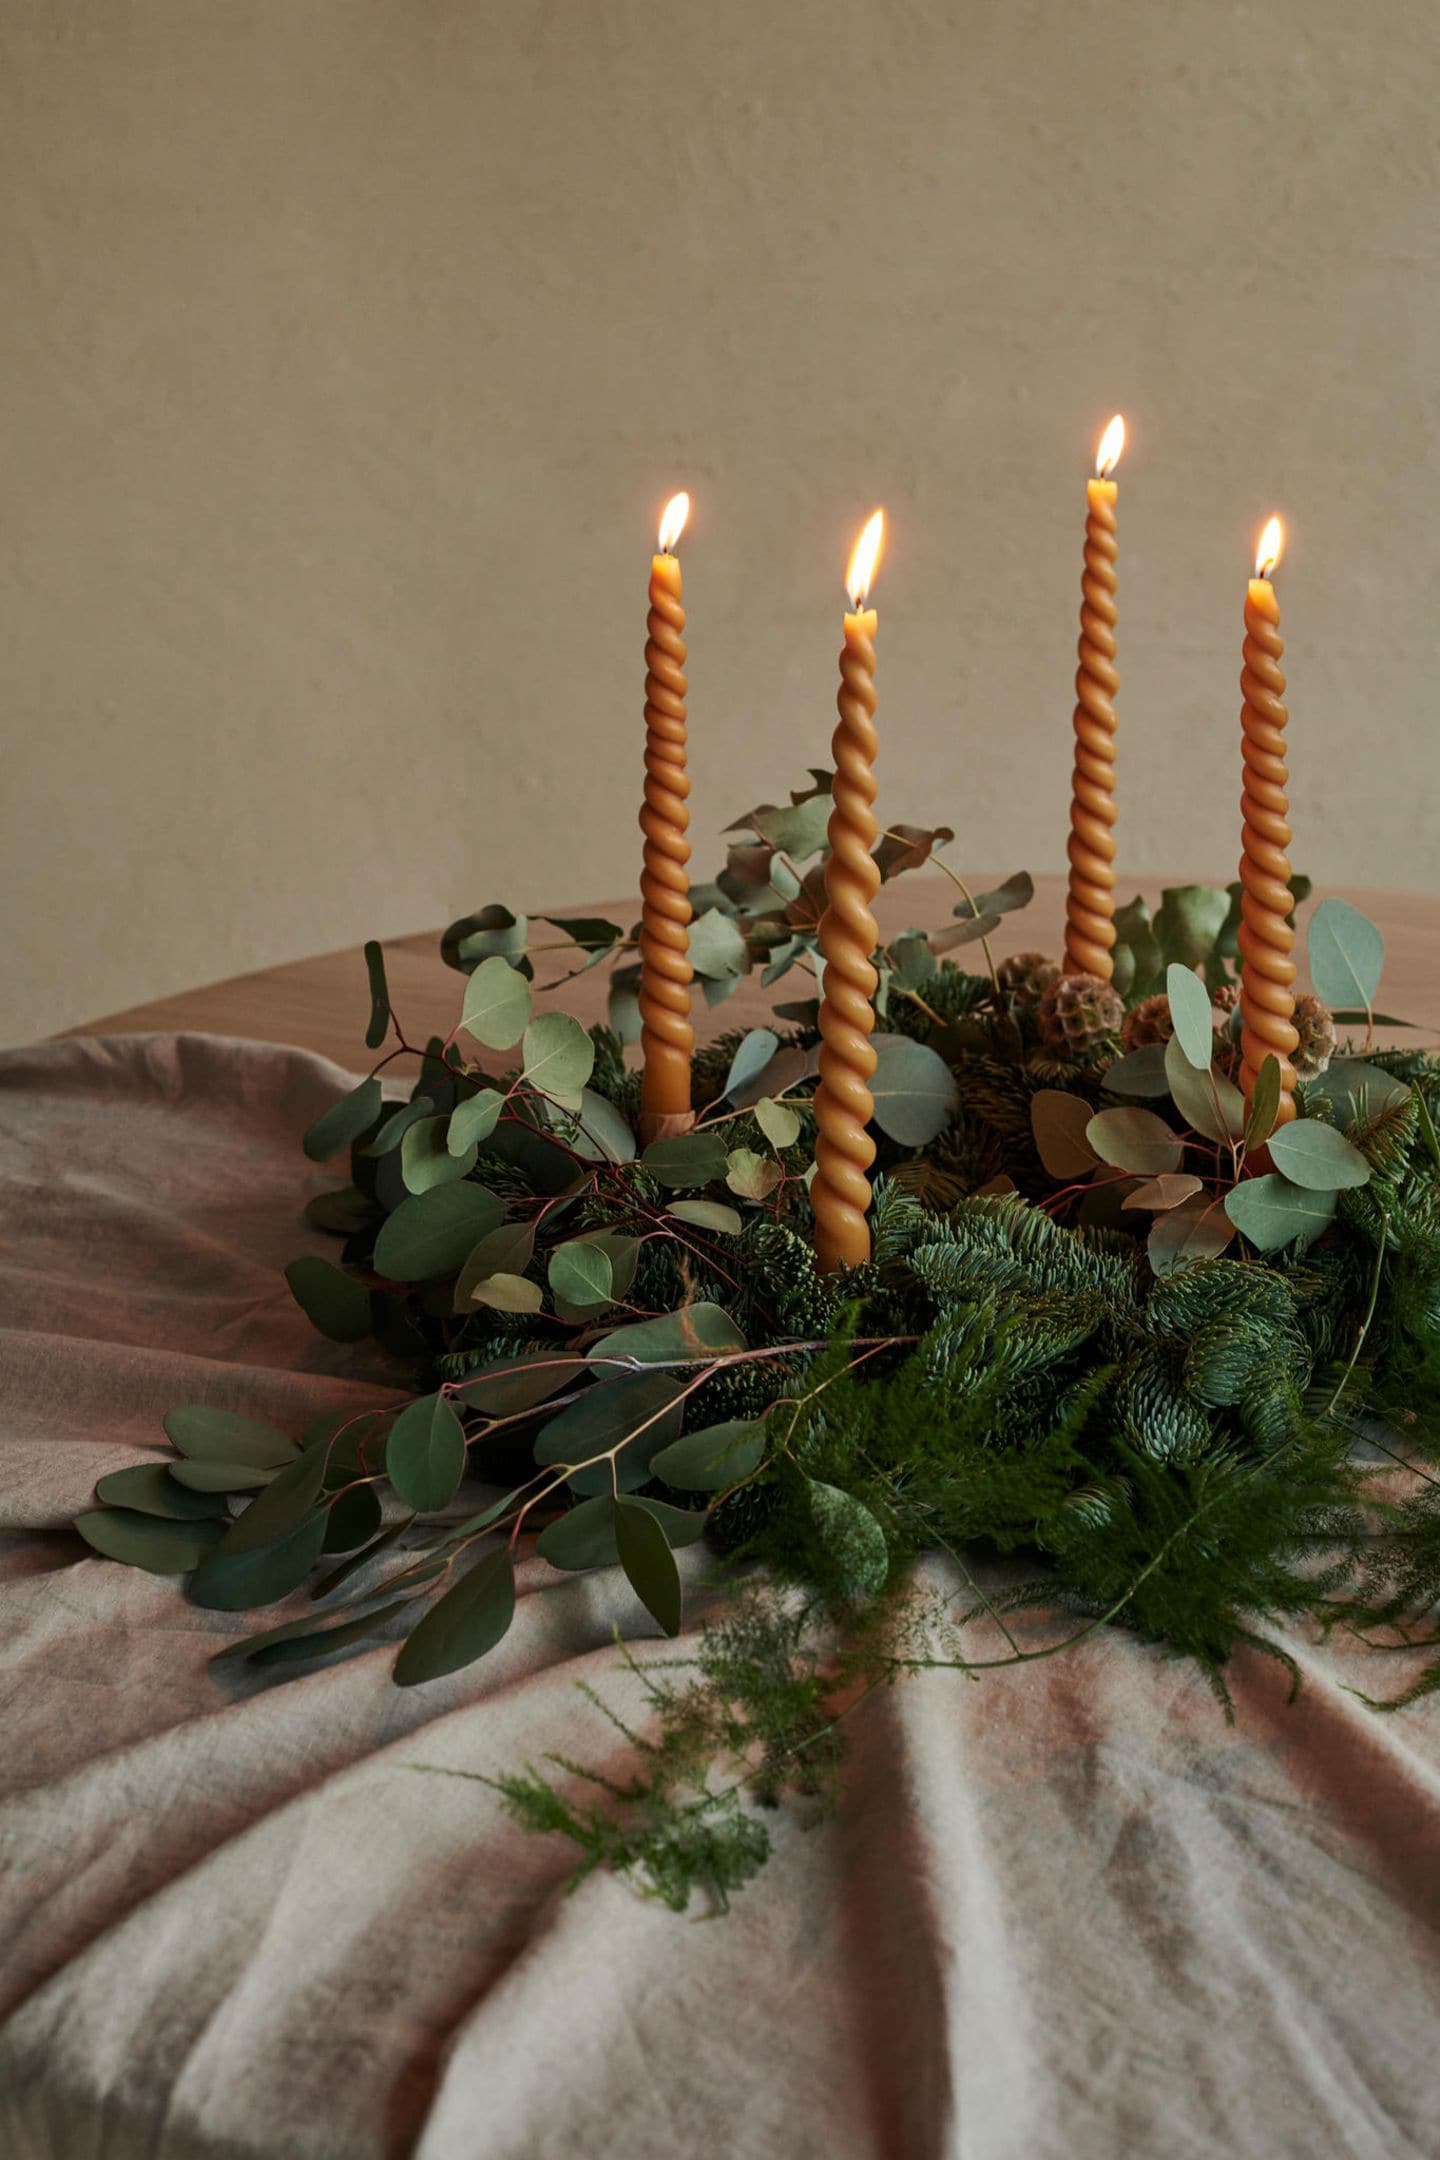 Adventskranz aus Tannengrün mit dekorativem Eukalyptus und gedrehten Kerzen